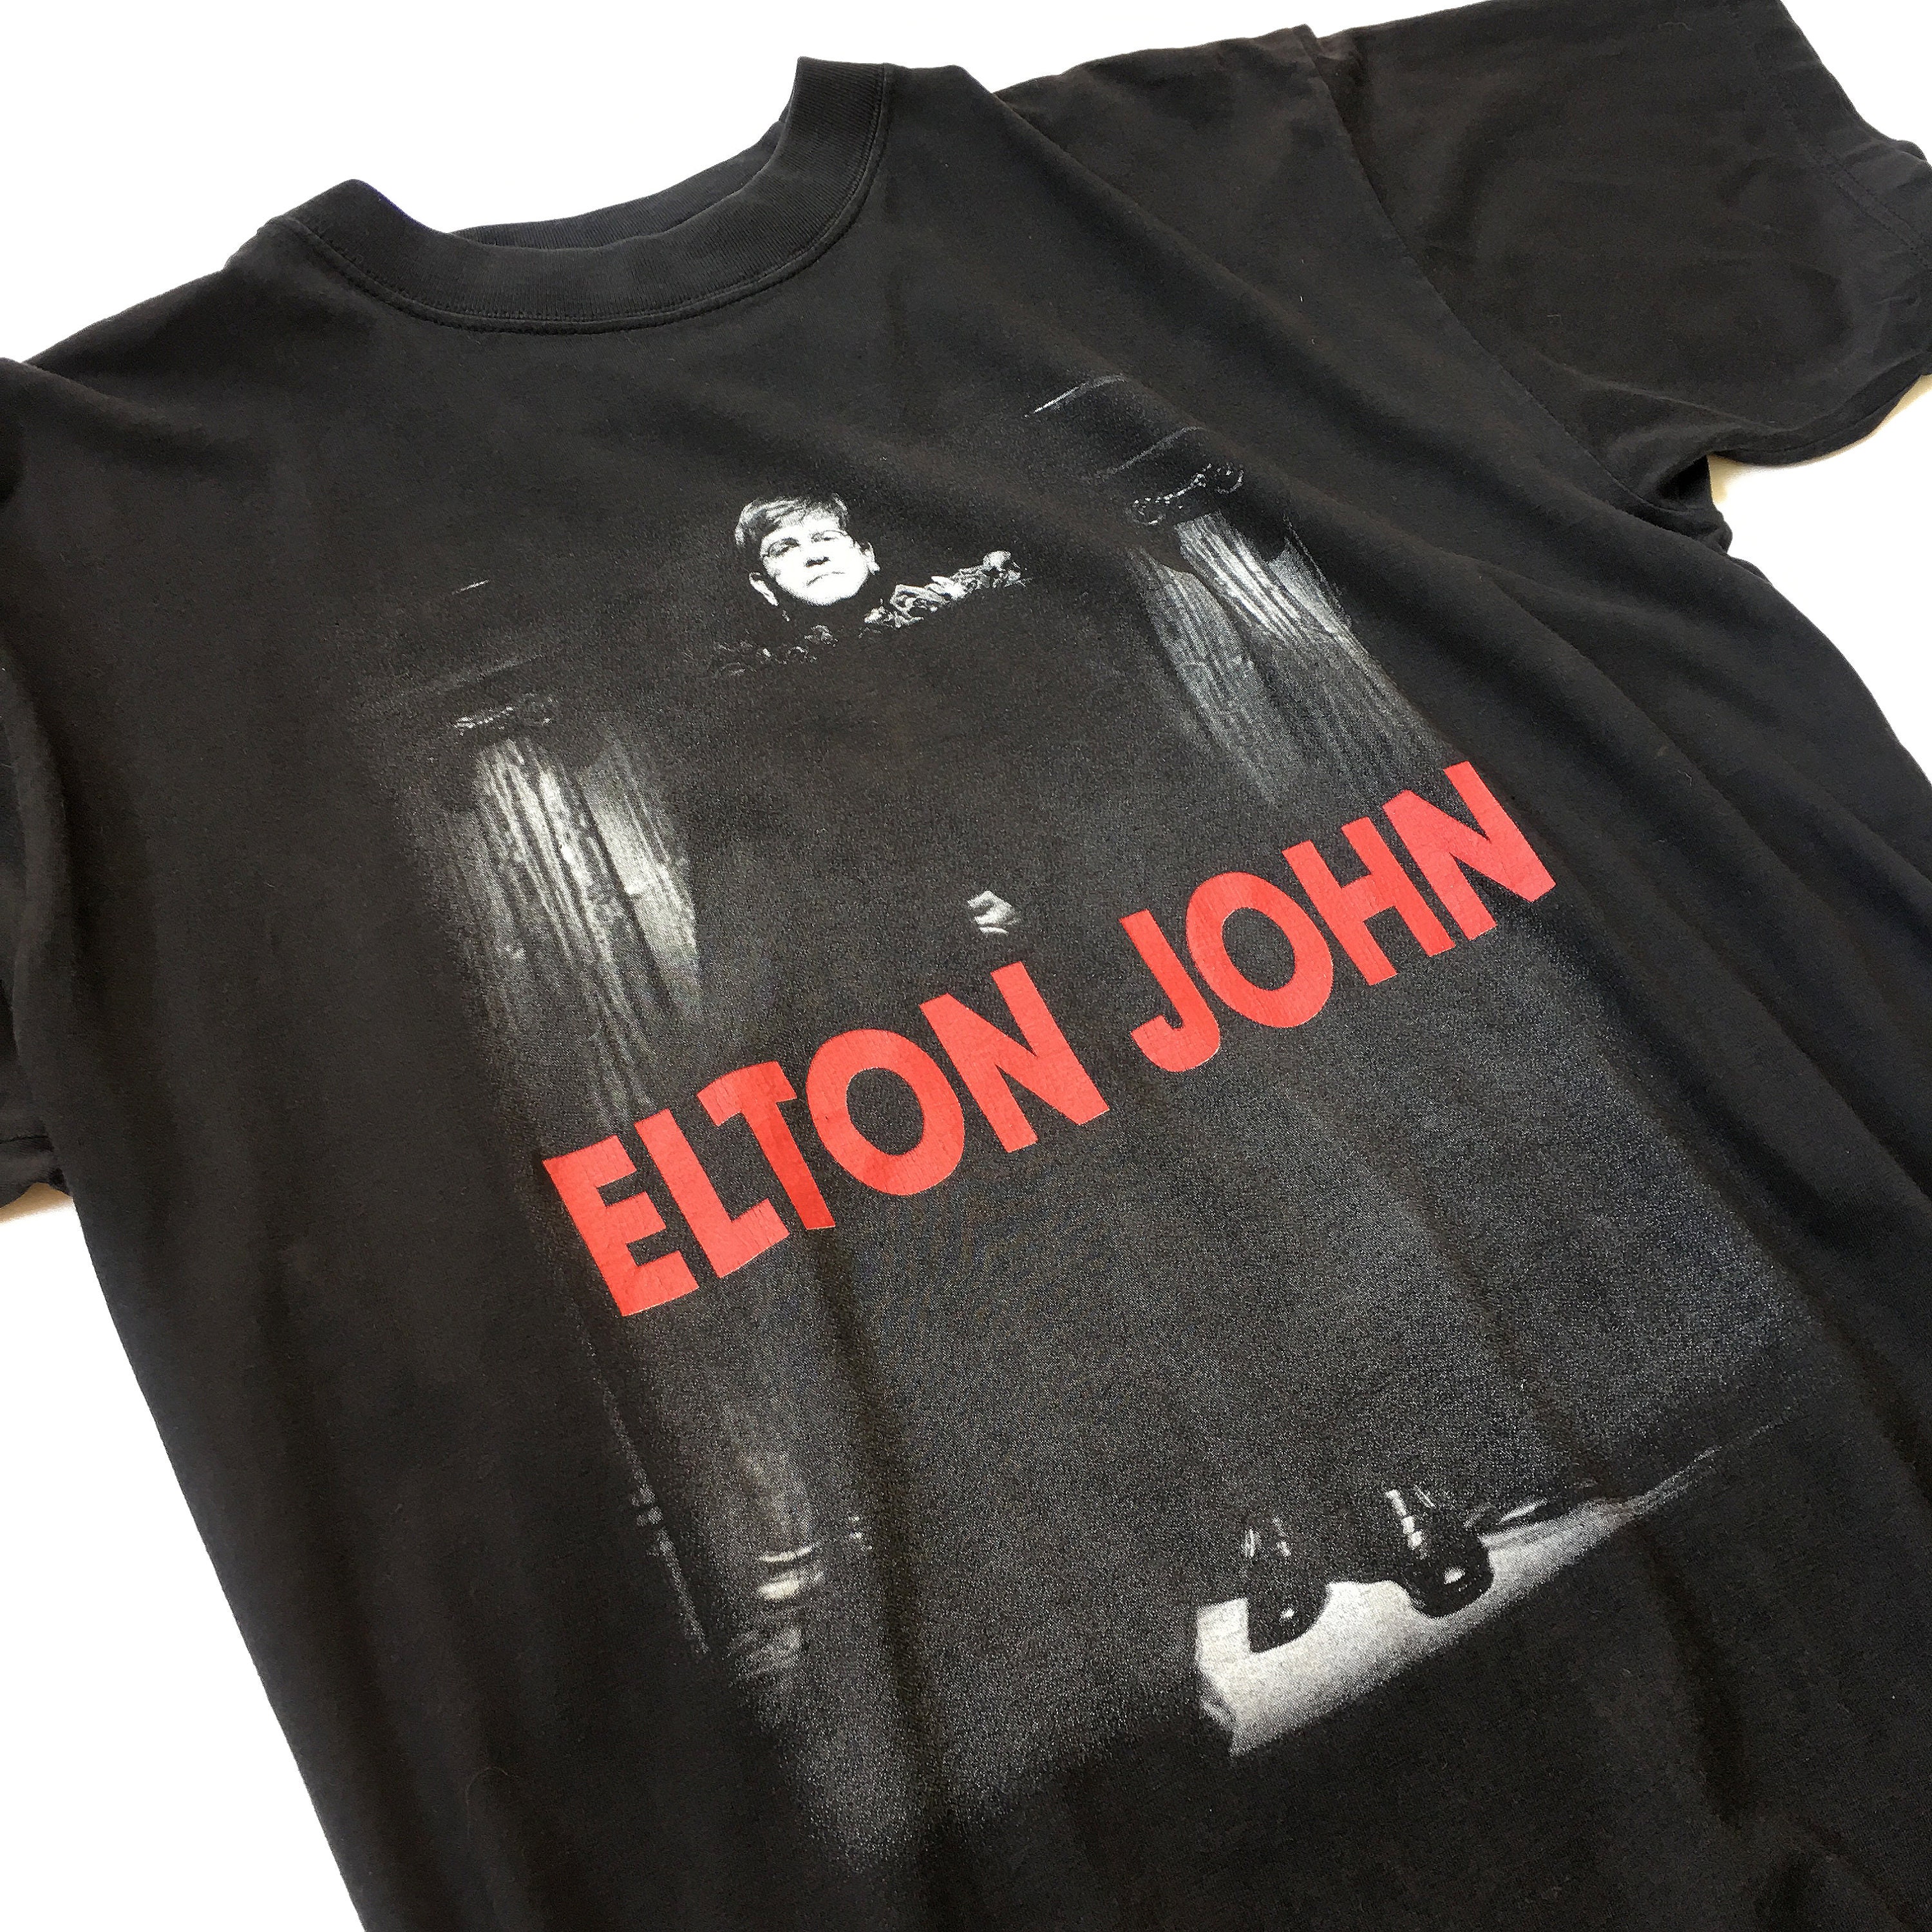 Discover Original Vintage 1997 Elton John The Big Picture tour T-Shirt